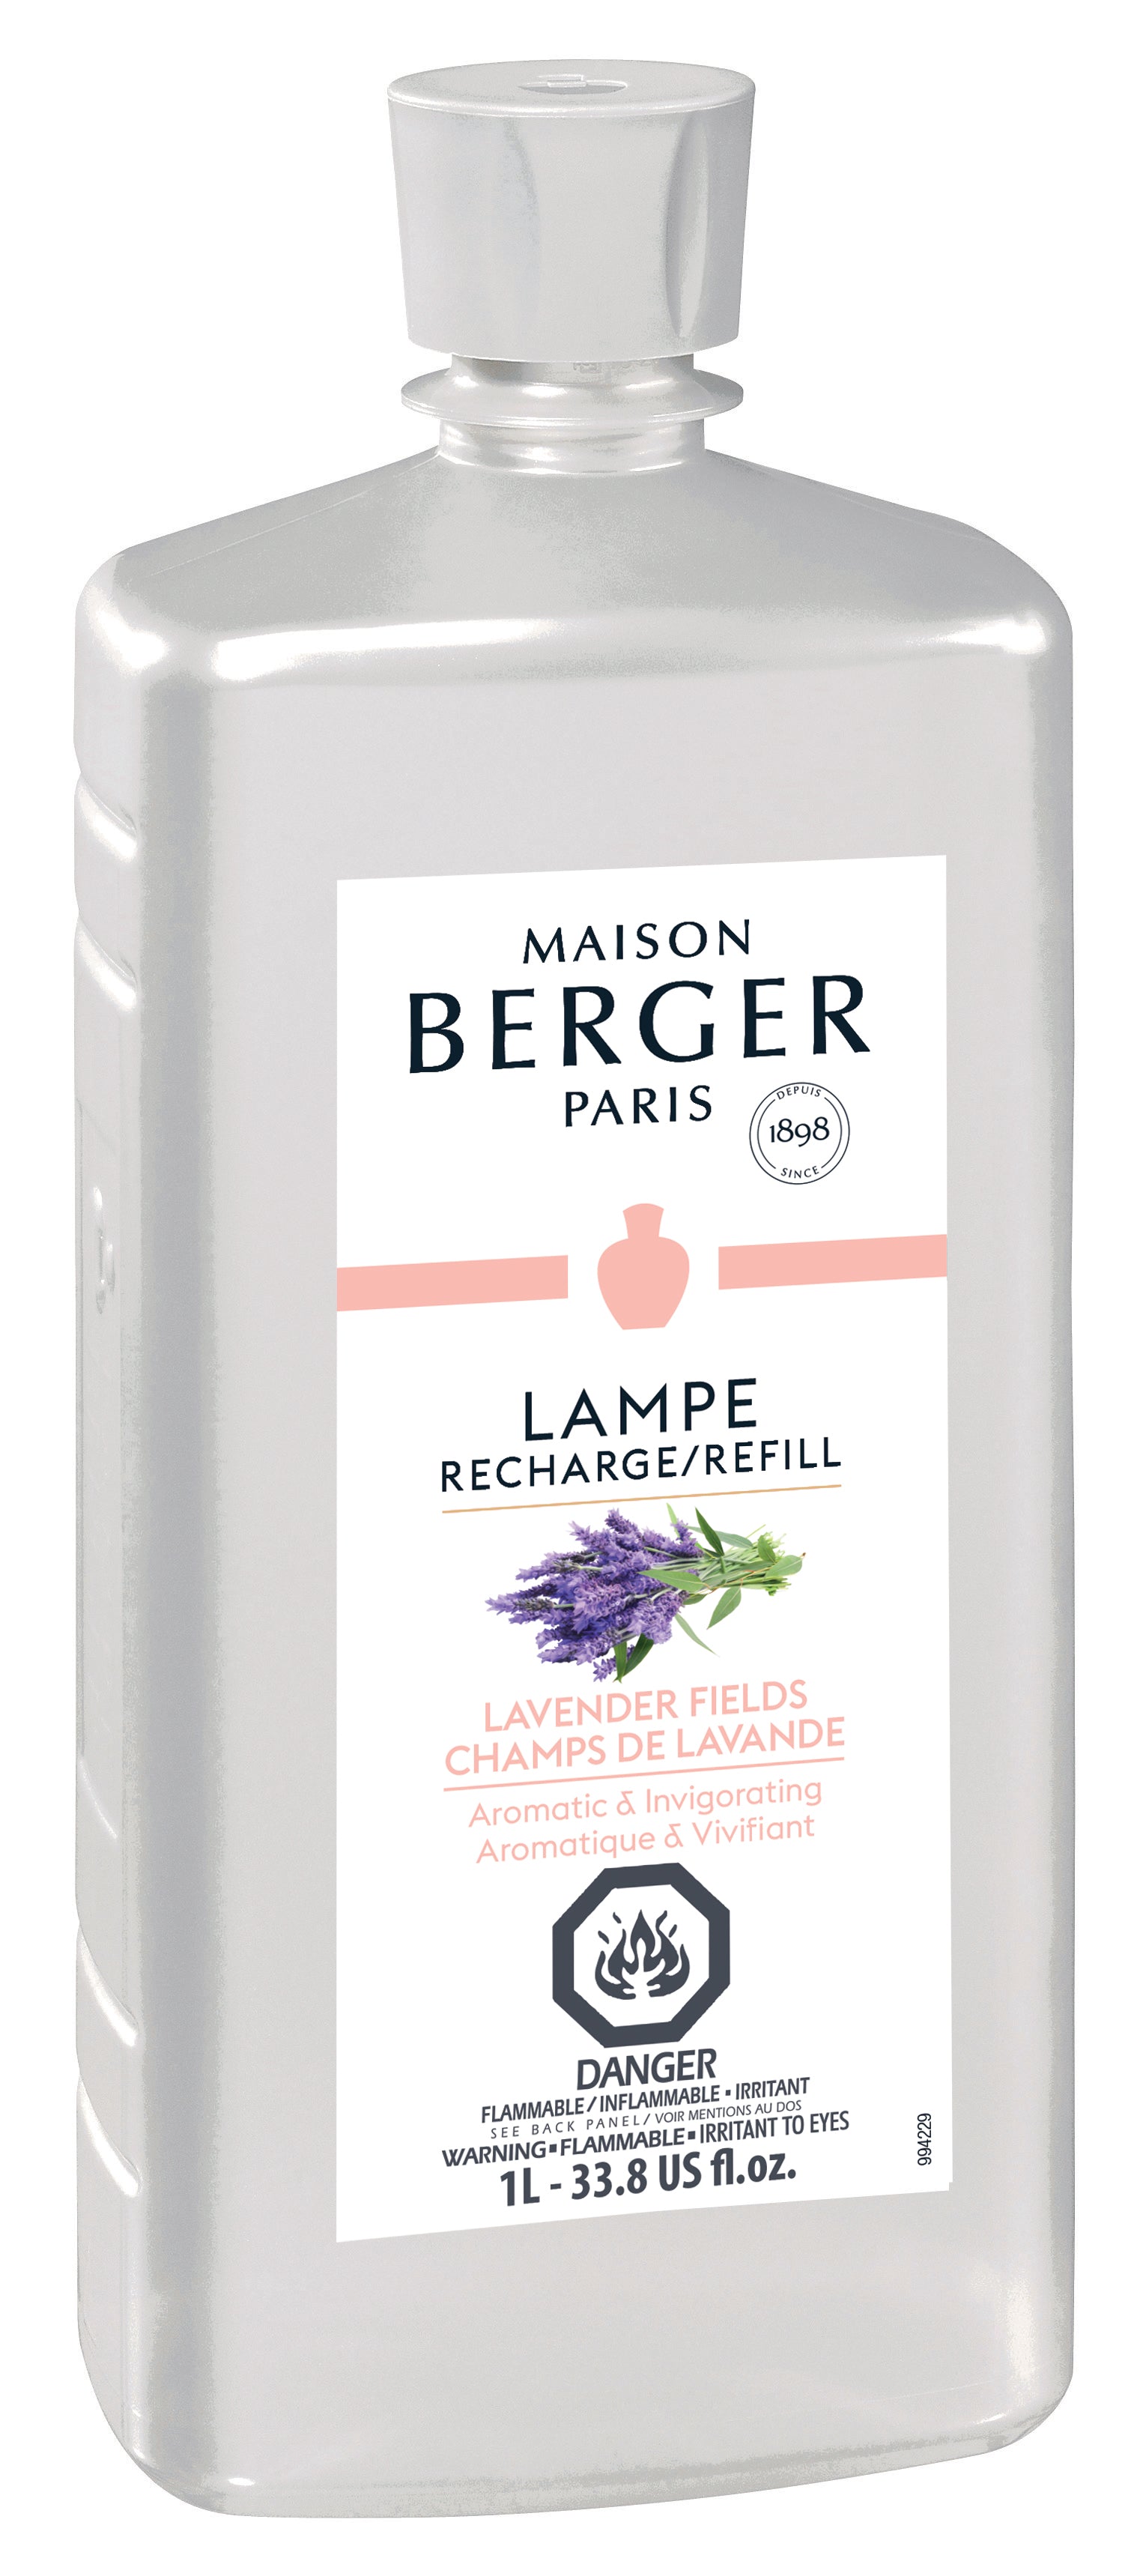 Recharge Parfum Lampe Berger Champs de Lavande